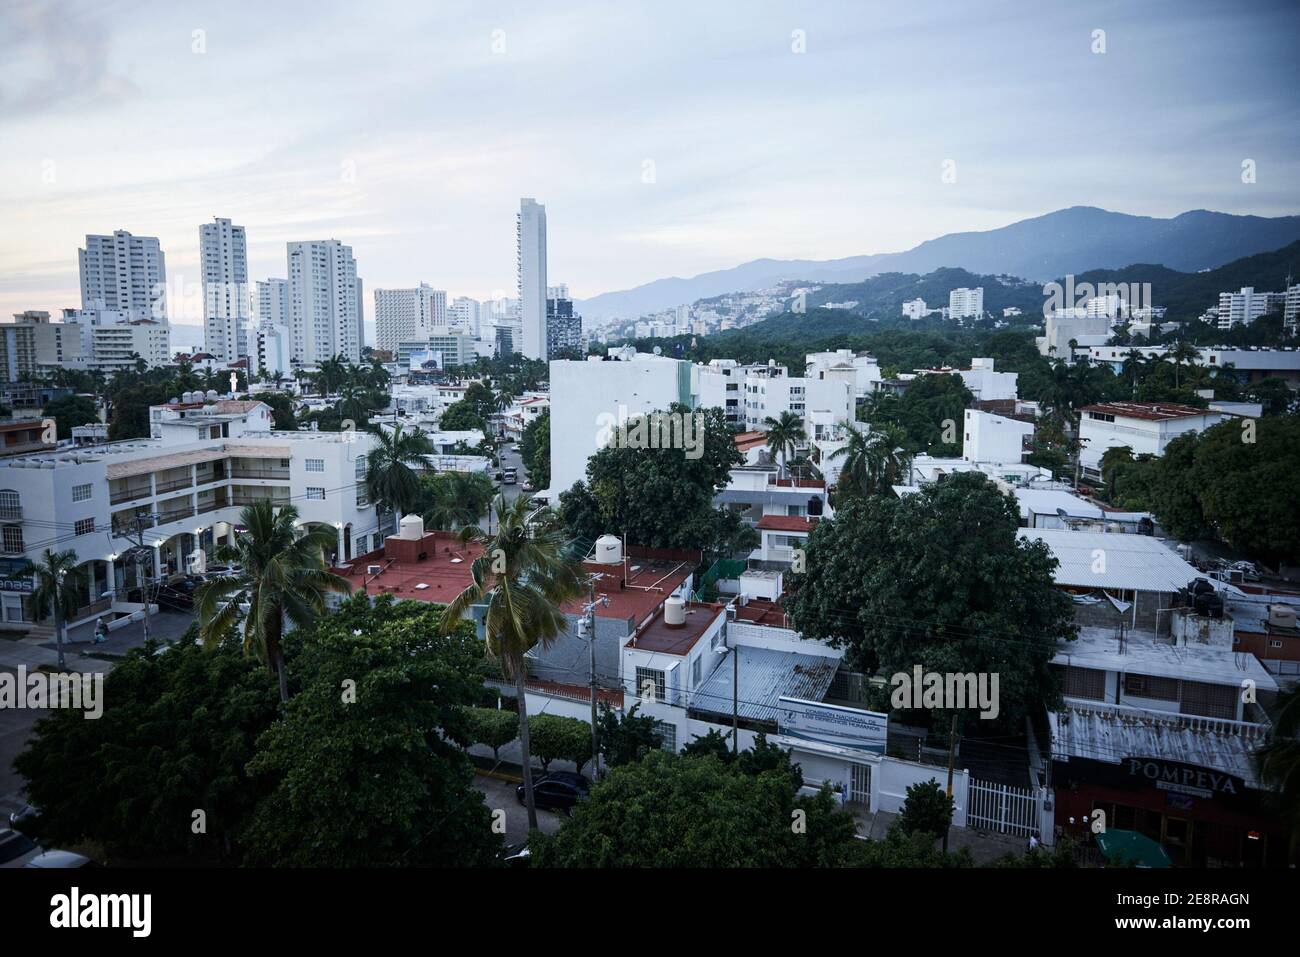 Le paysage et le paysage urbain de la ville d'Acapulco, dans l'état de Guerrero au Mexique. Banque D'Images